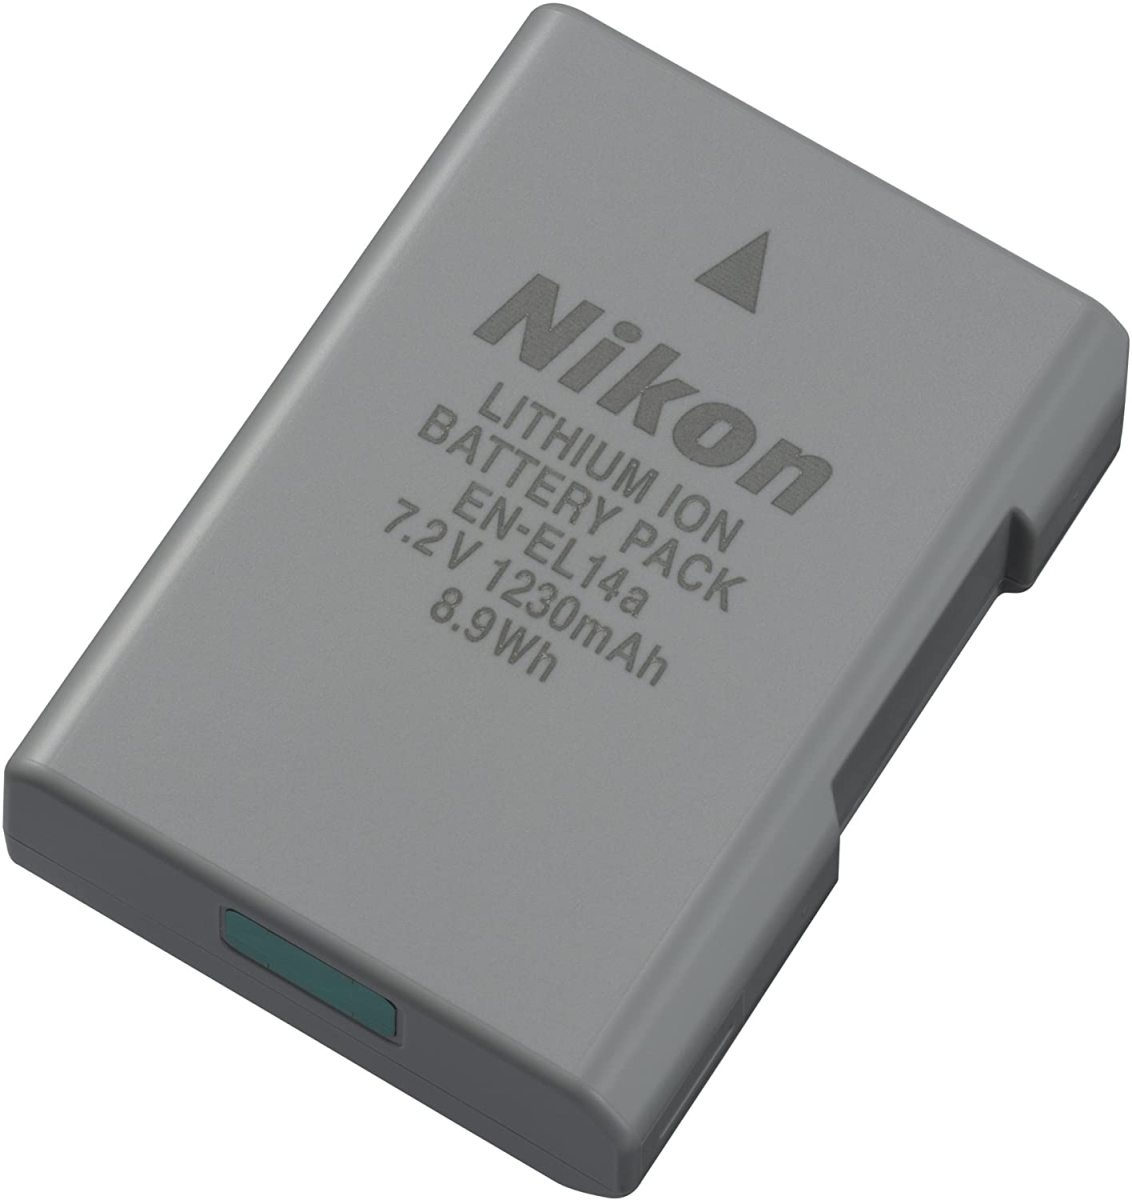 [ original ]Nikon Nikon EN-EL14a Manufacturers original abroad oriented battery free shipping! EN-EL14a[ENEL14a]